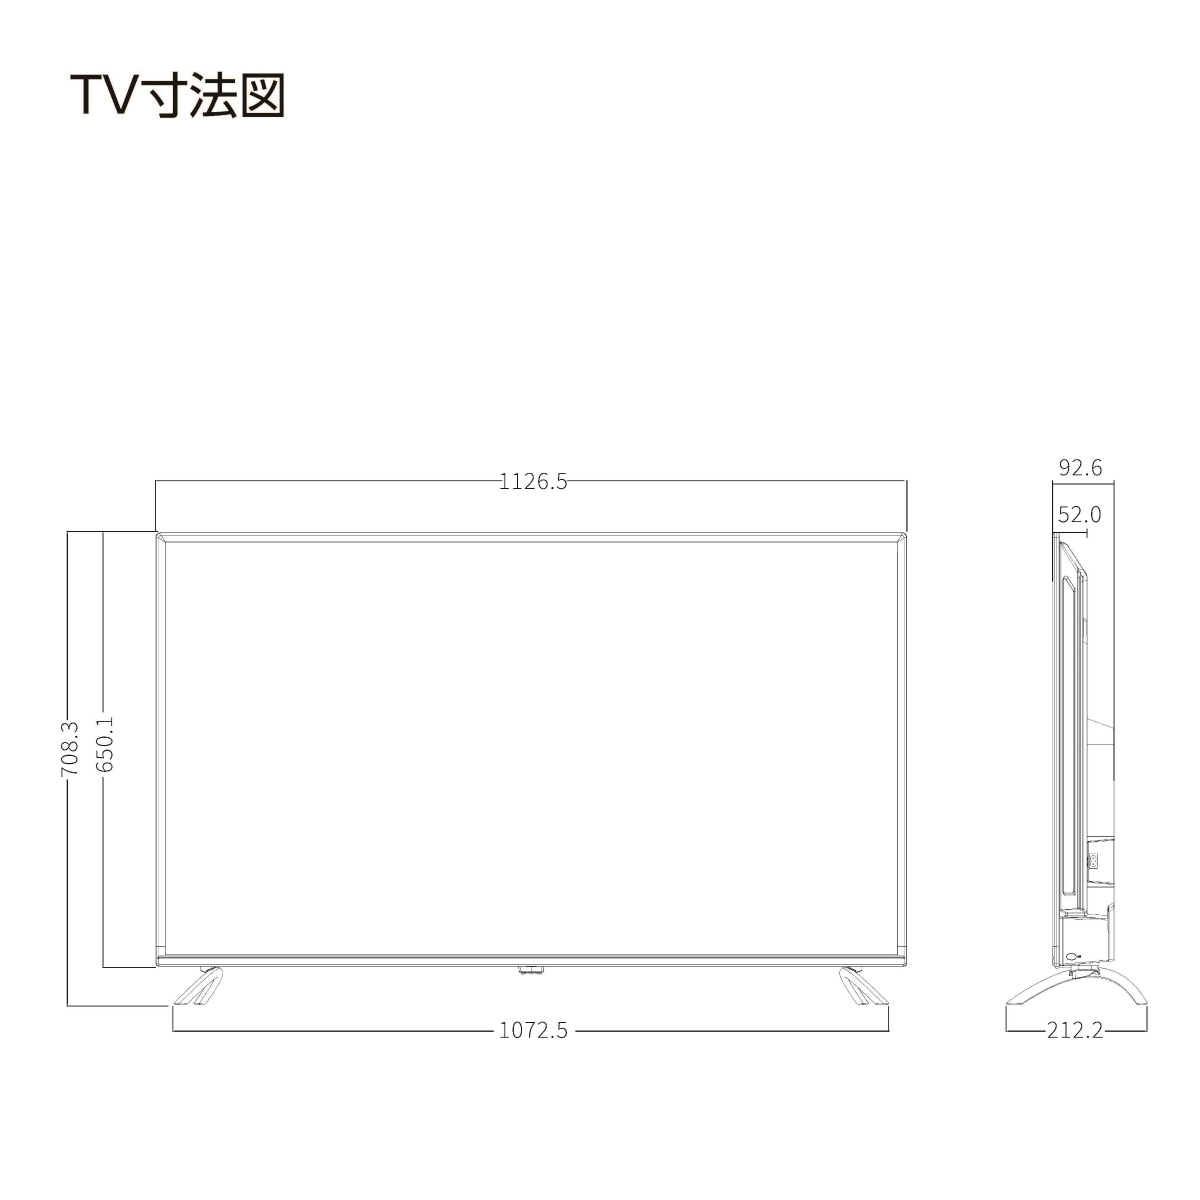 テレビ/映像機器 テレビ ORION 50型地上・BS・110度CSデジタル フルハイビジョンLED液晶テレビ 